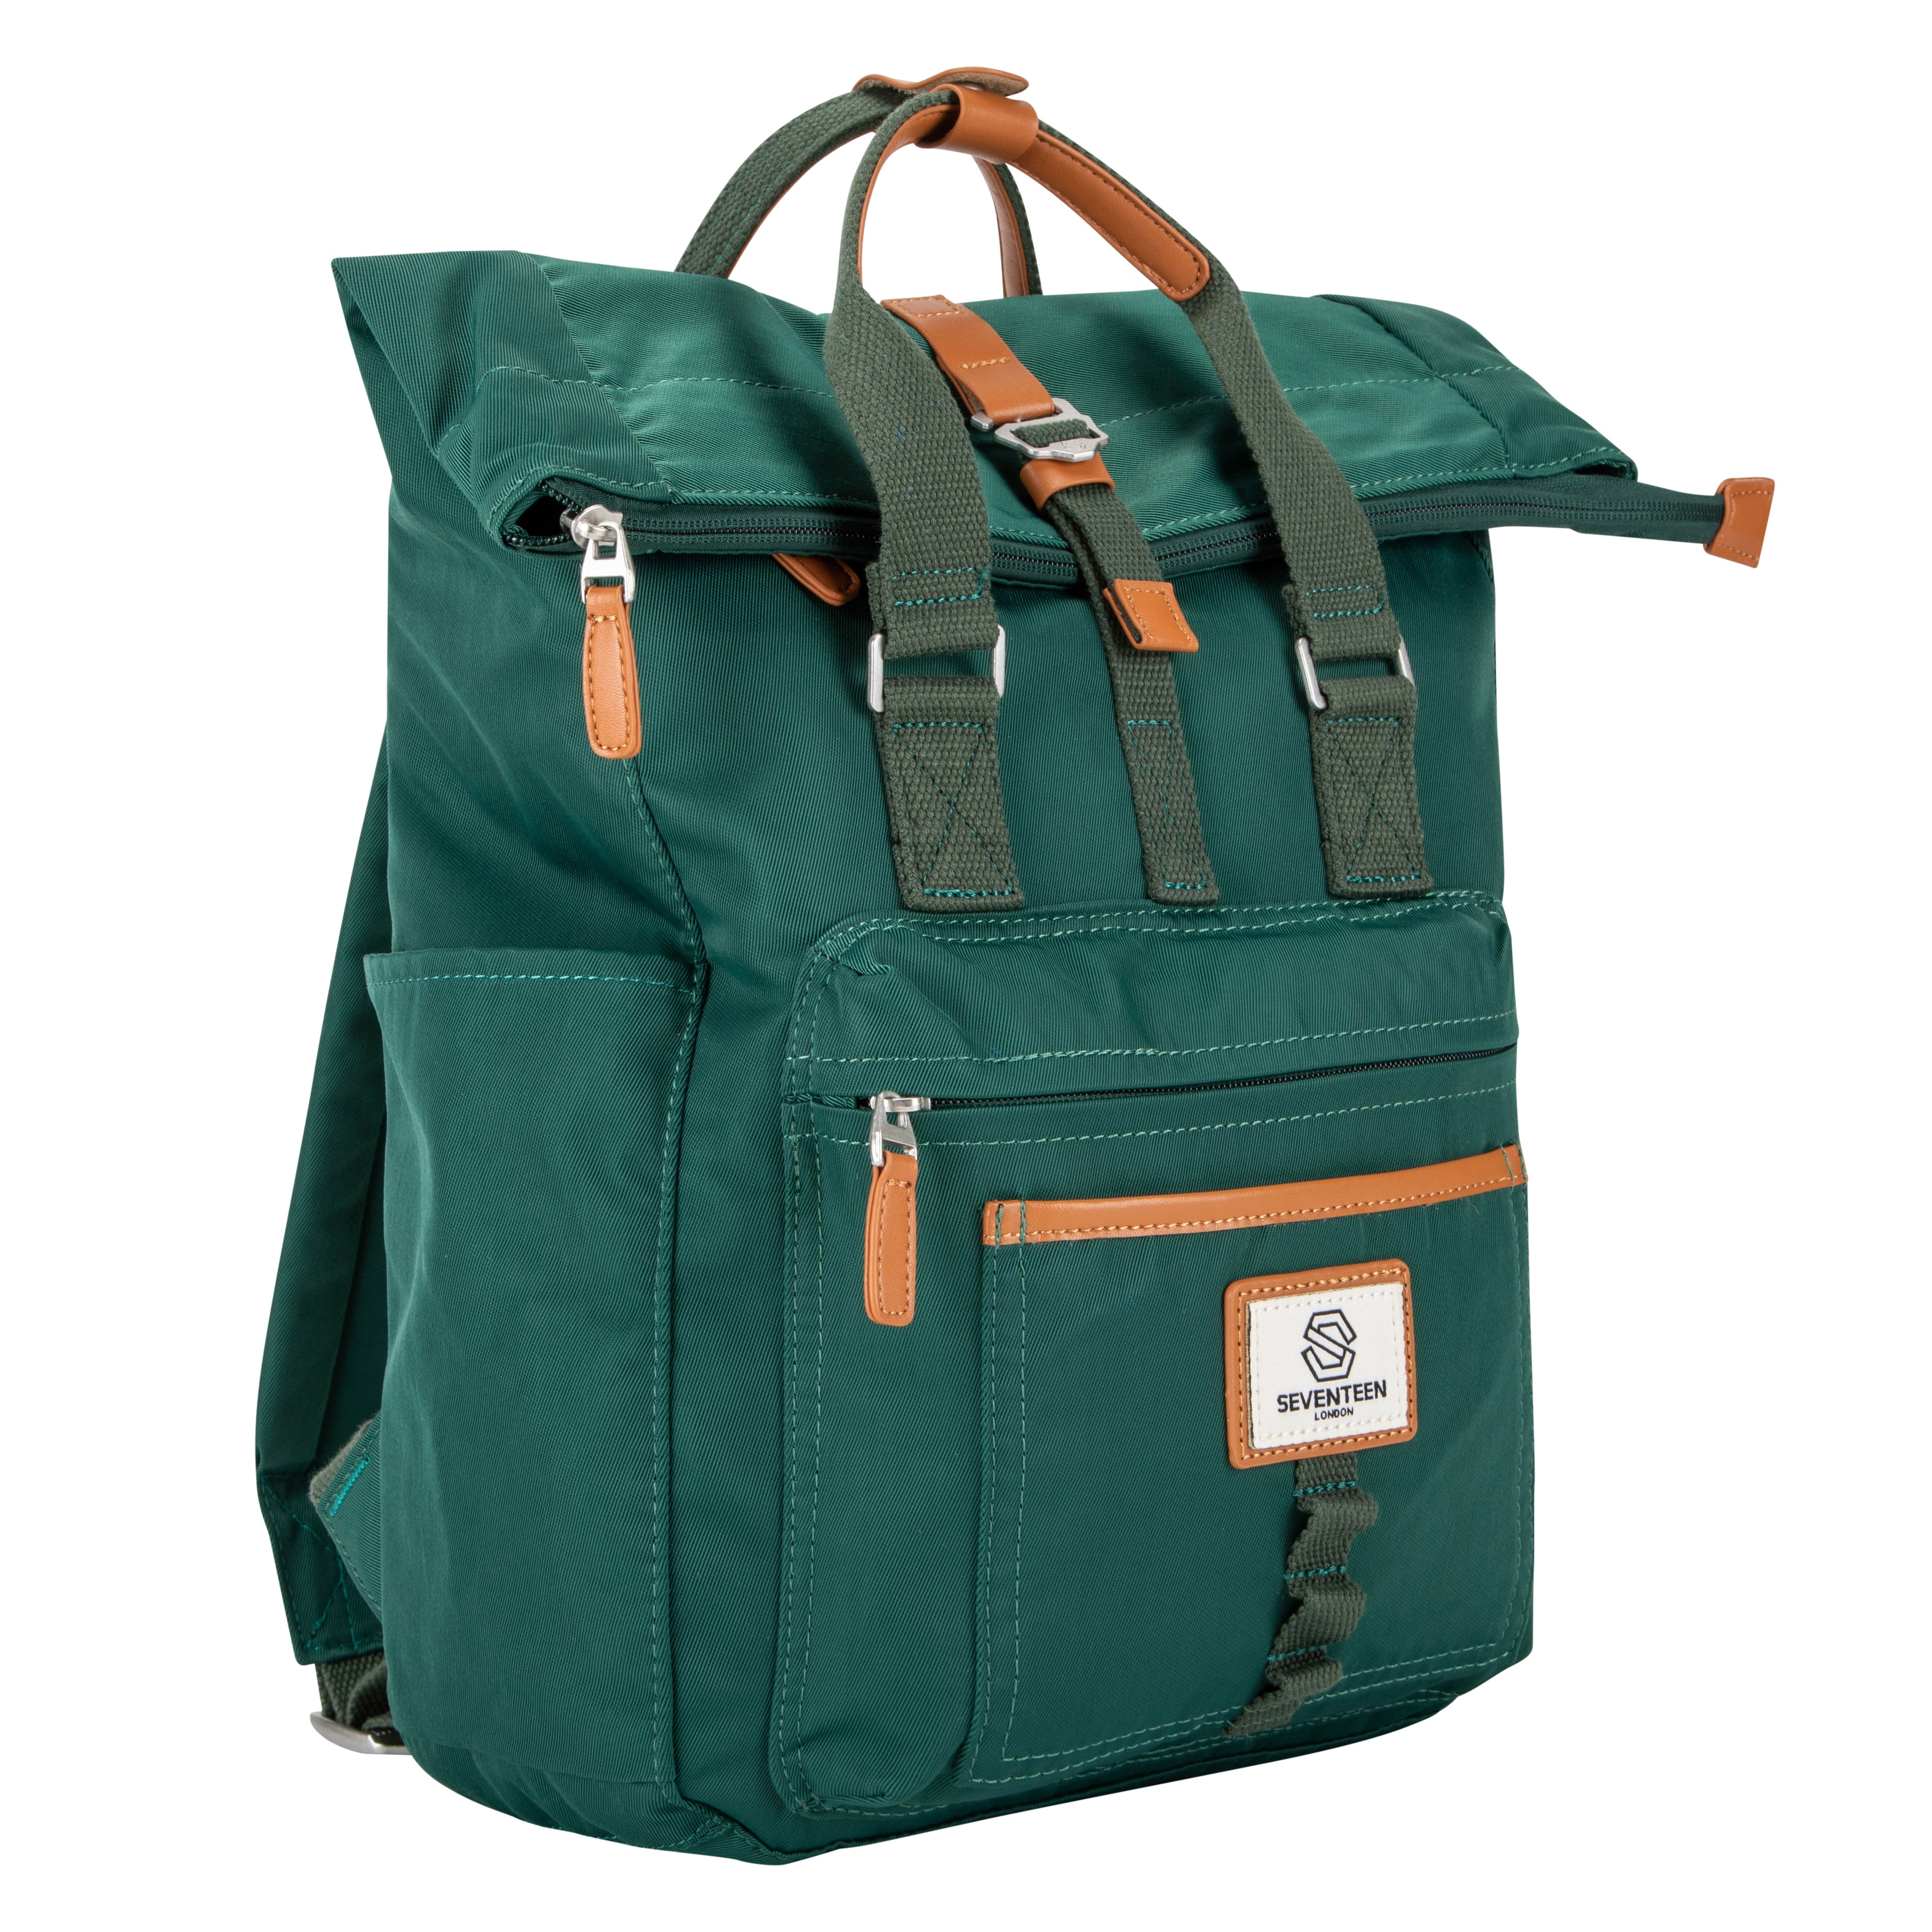 Canary Wharf Backpack - Emerald Green